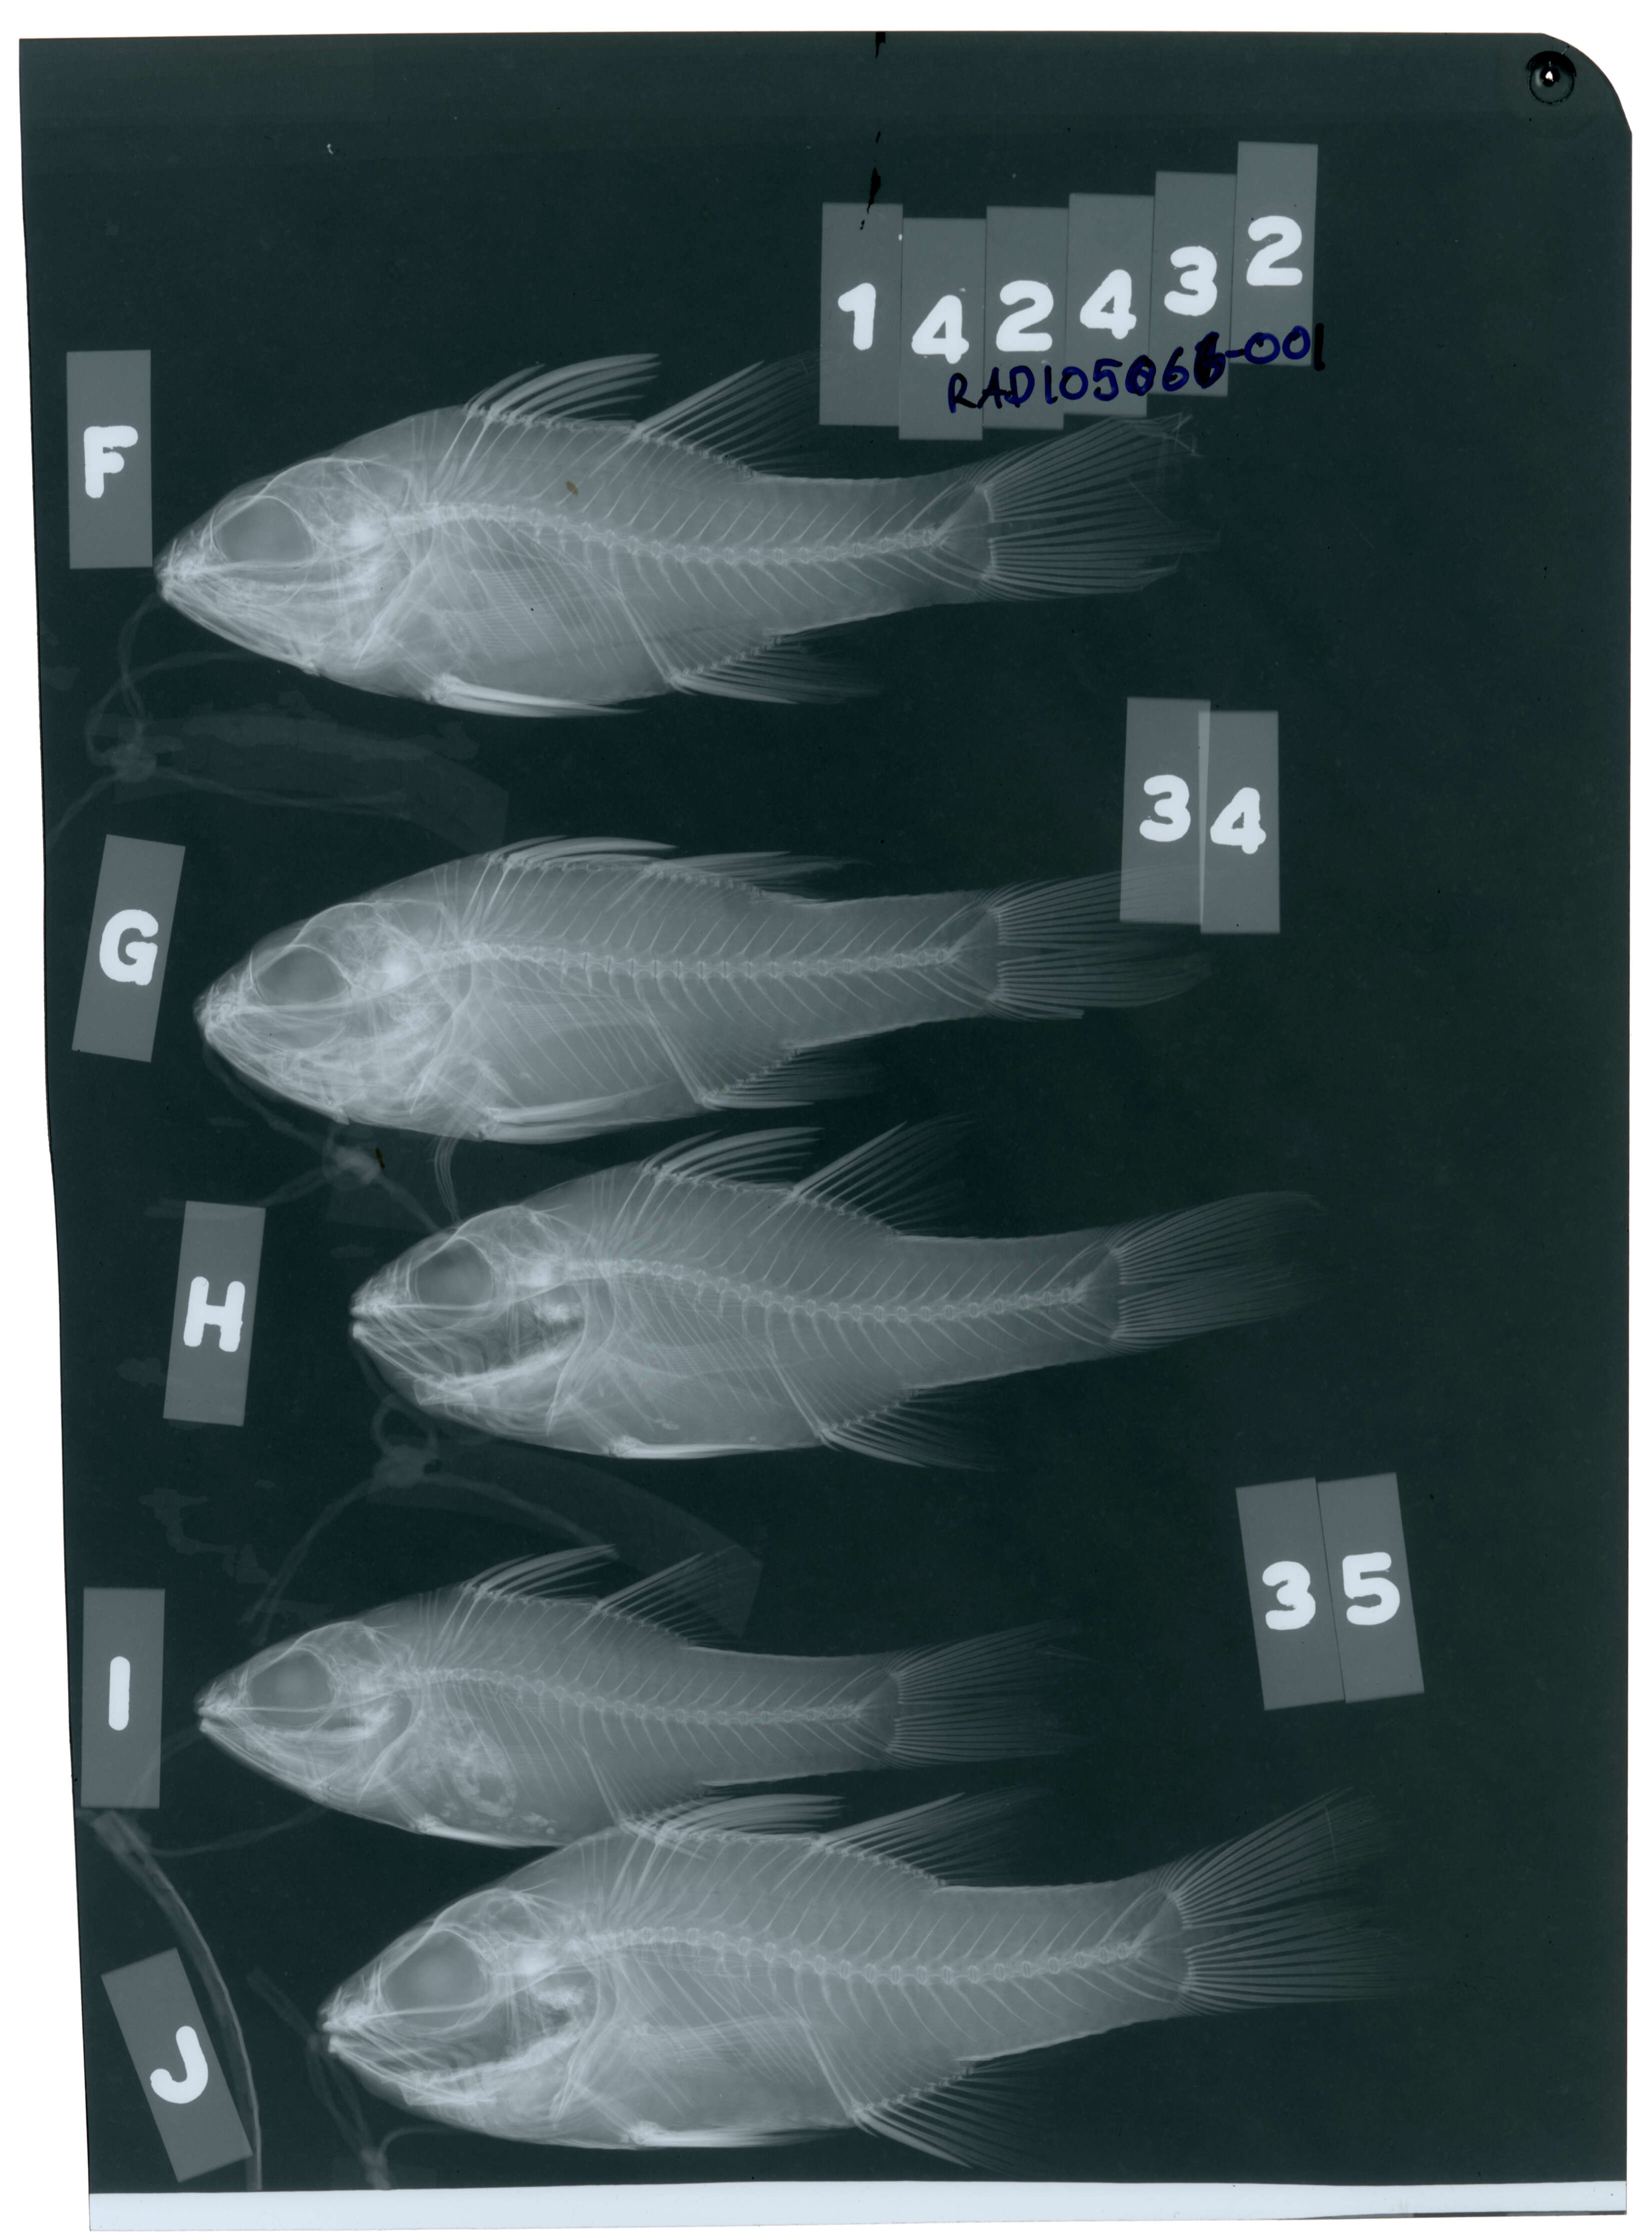 Image of Cook's cardinalfish